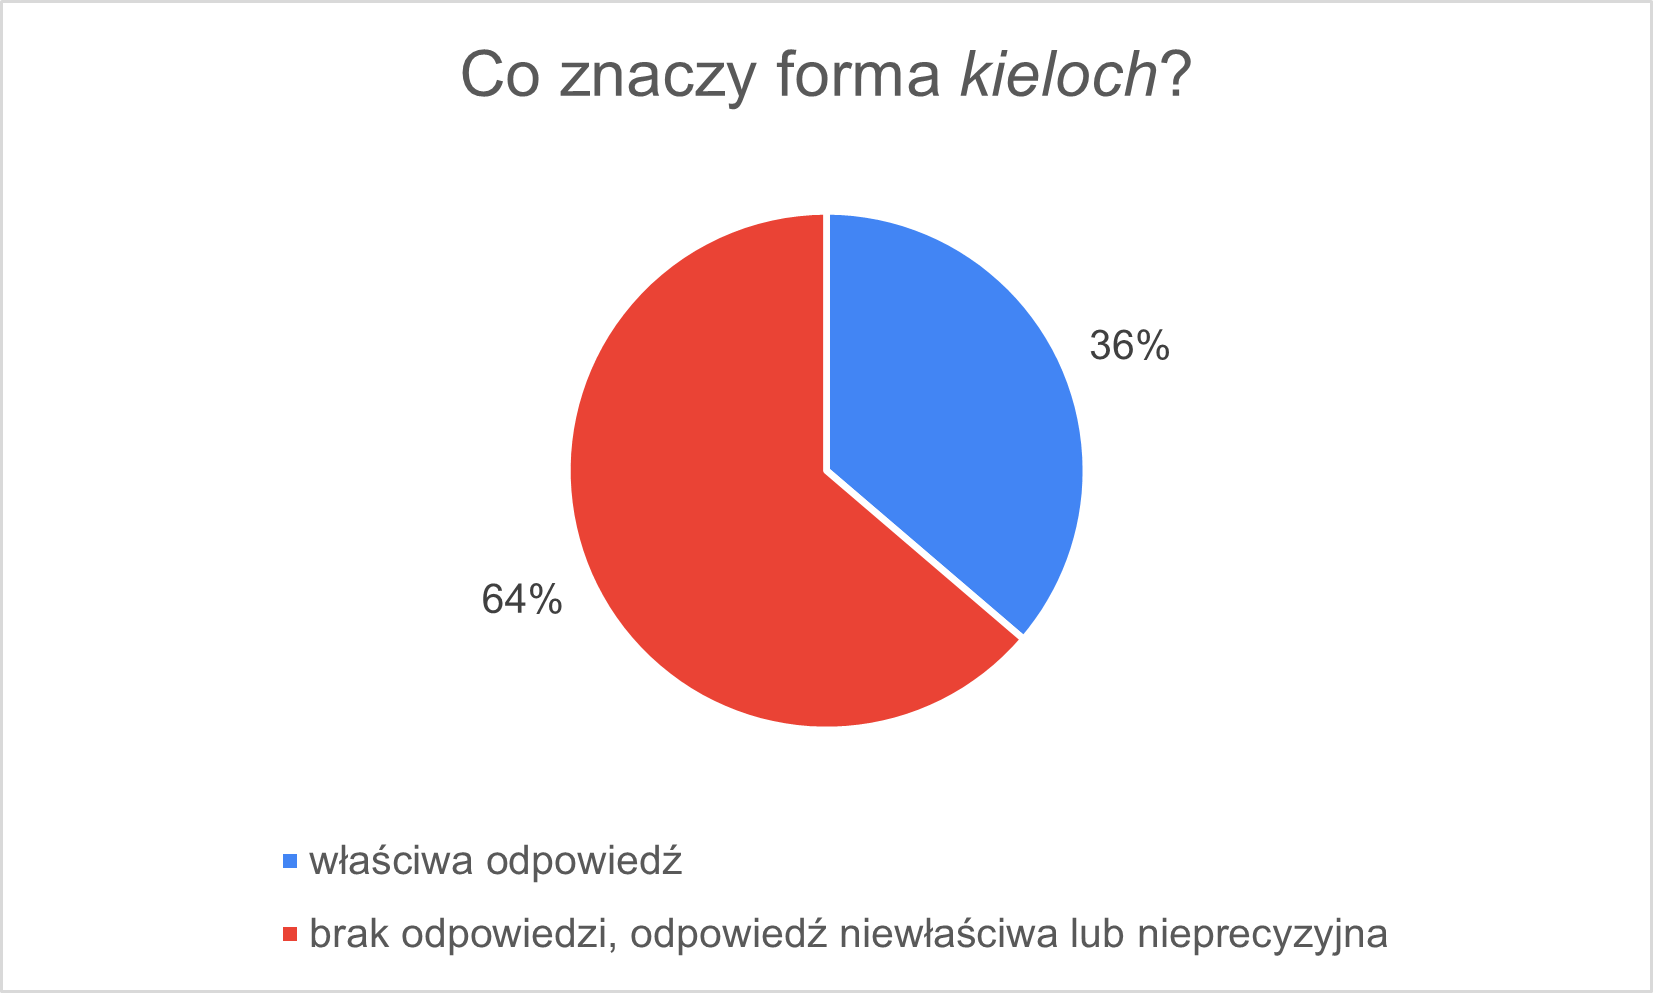 kieloch_3.png